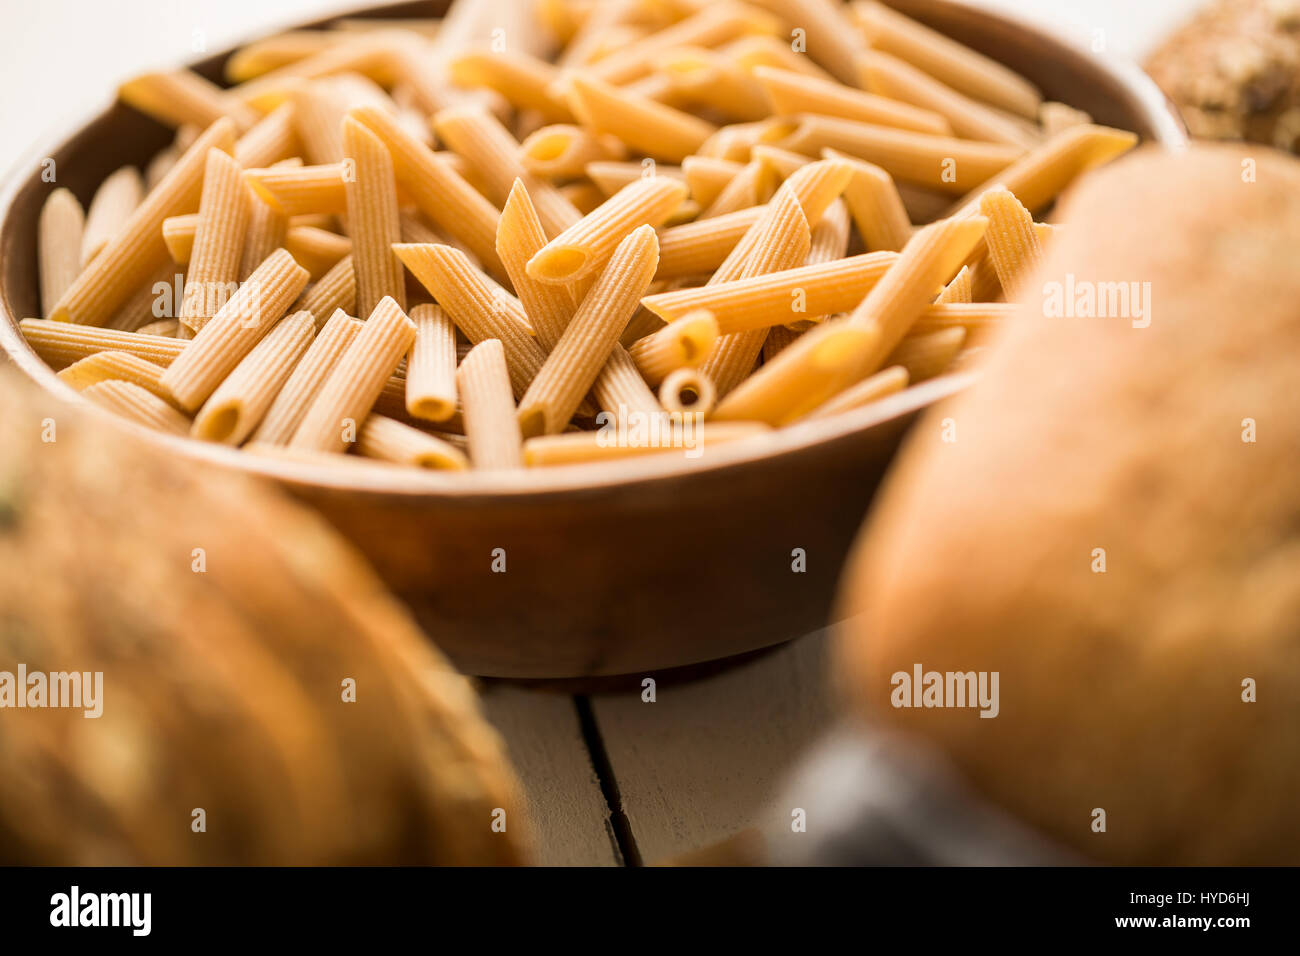 Pasta in bowl Stock Photo